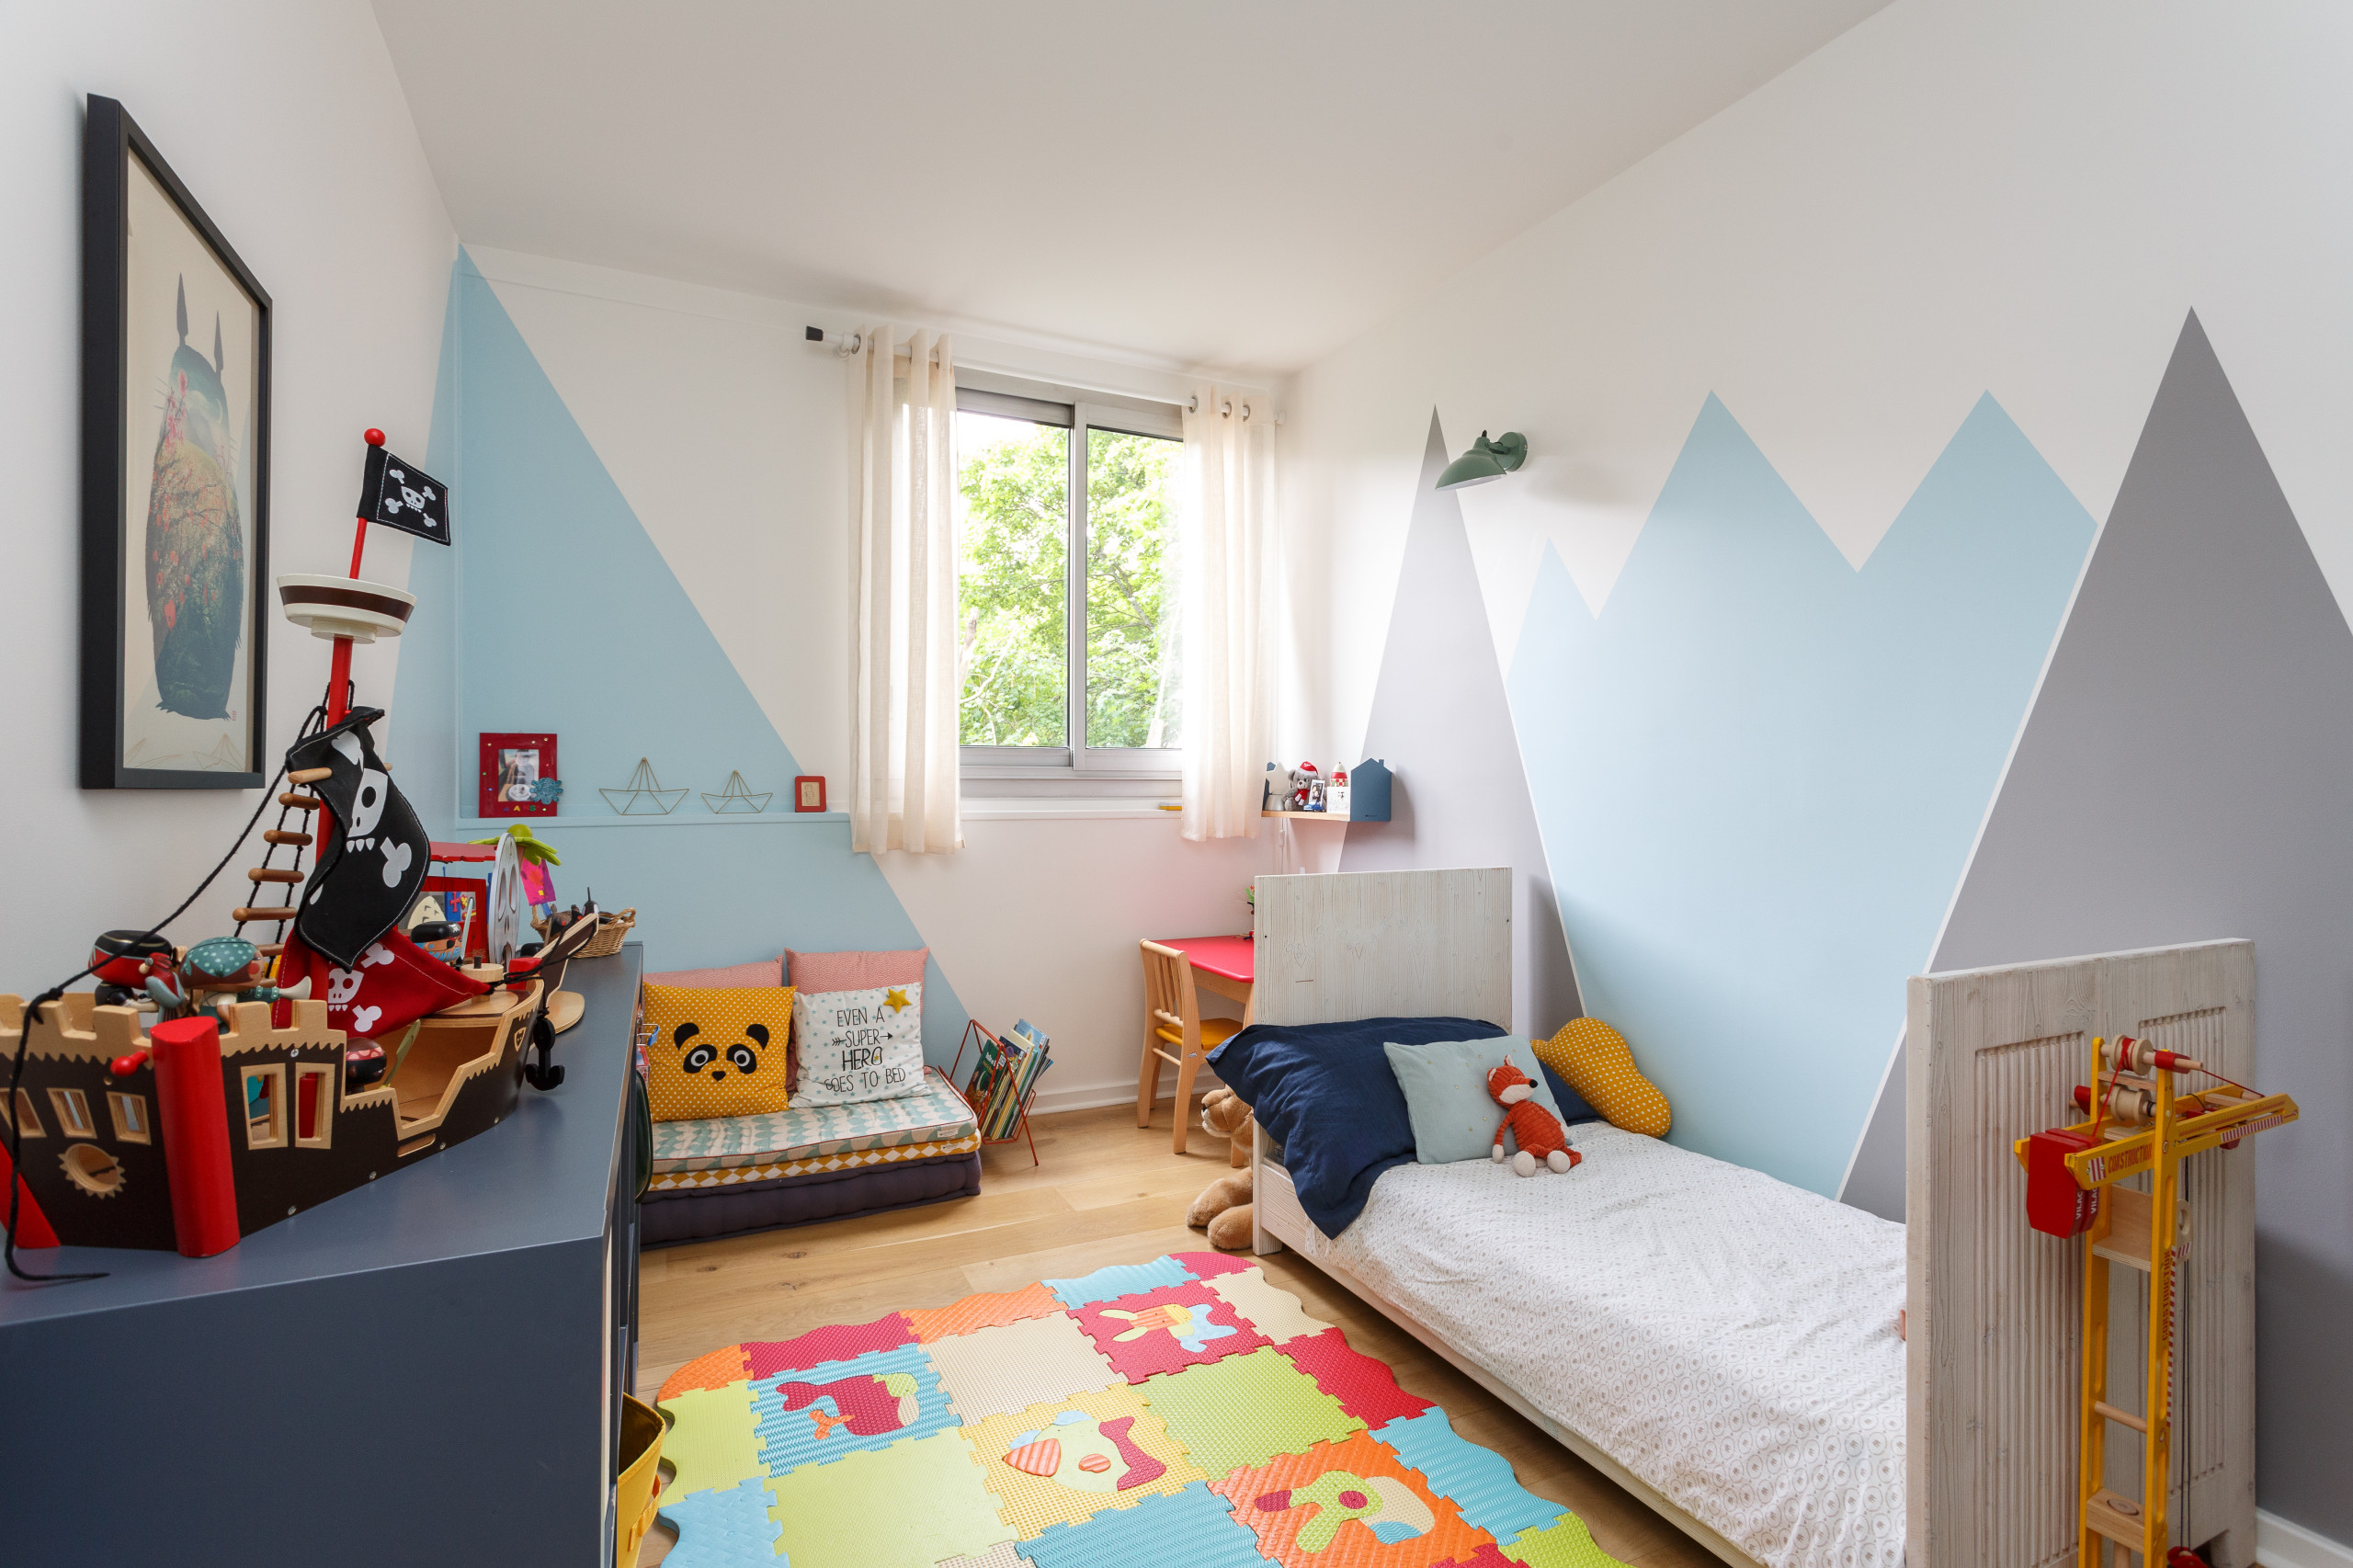 Décoration chambre enfant : Idées et tendances